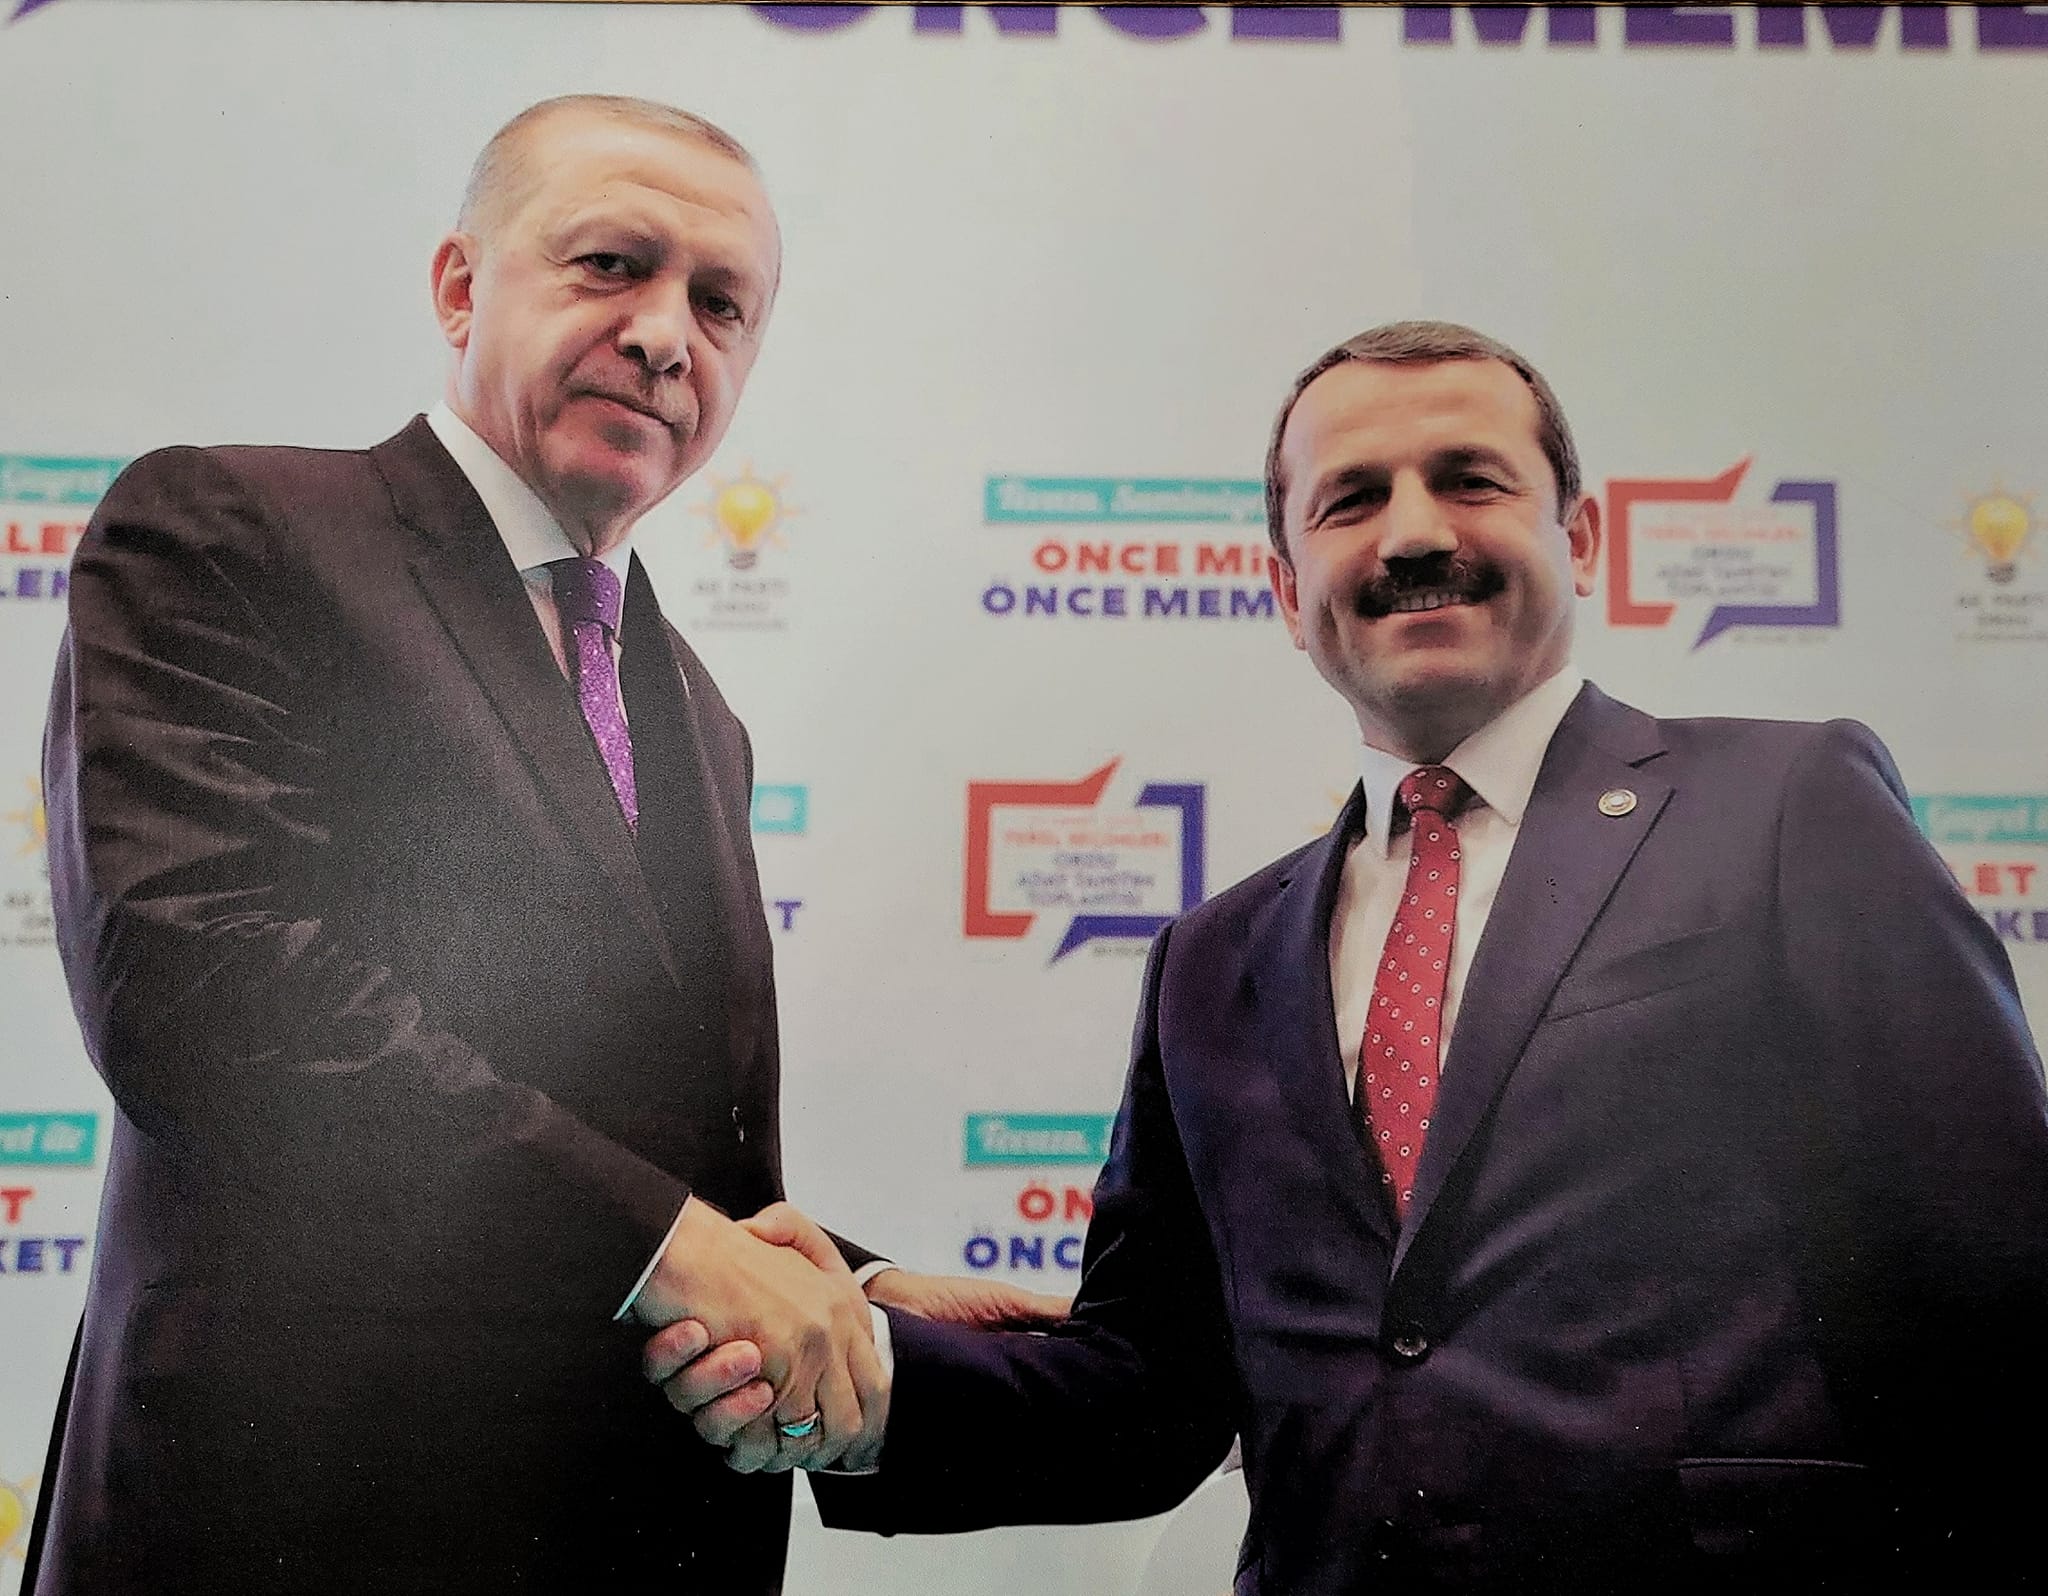 Türkiye Cumhurbaşkanı Recep Tayyip Erdoğan'ın doğum gününde sevgi ve takdir mesajları yağıyor